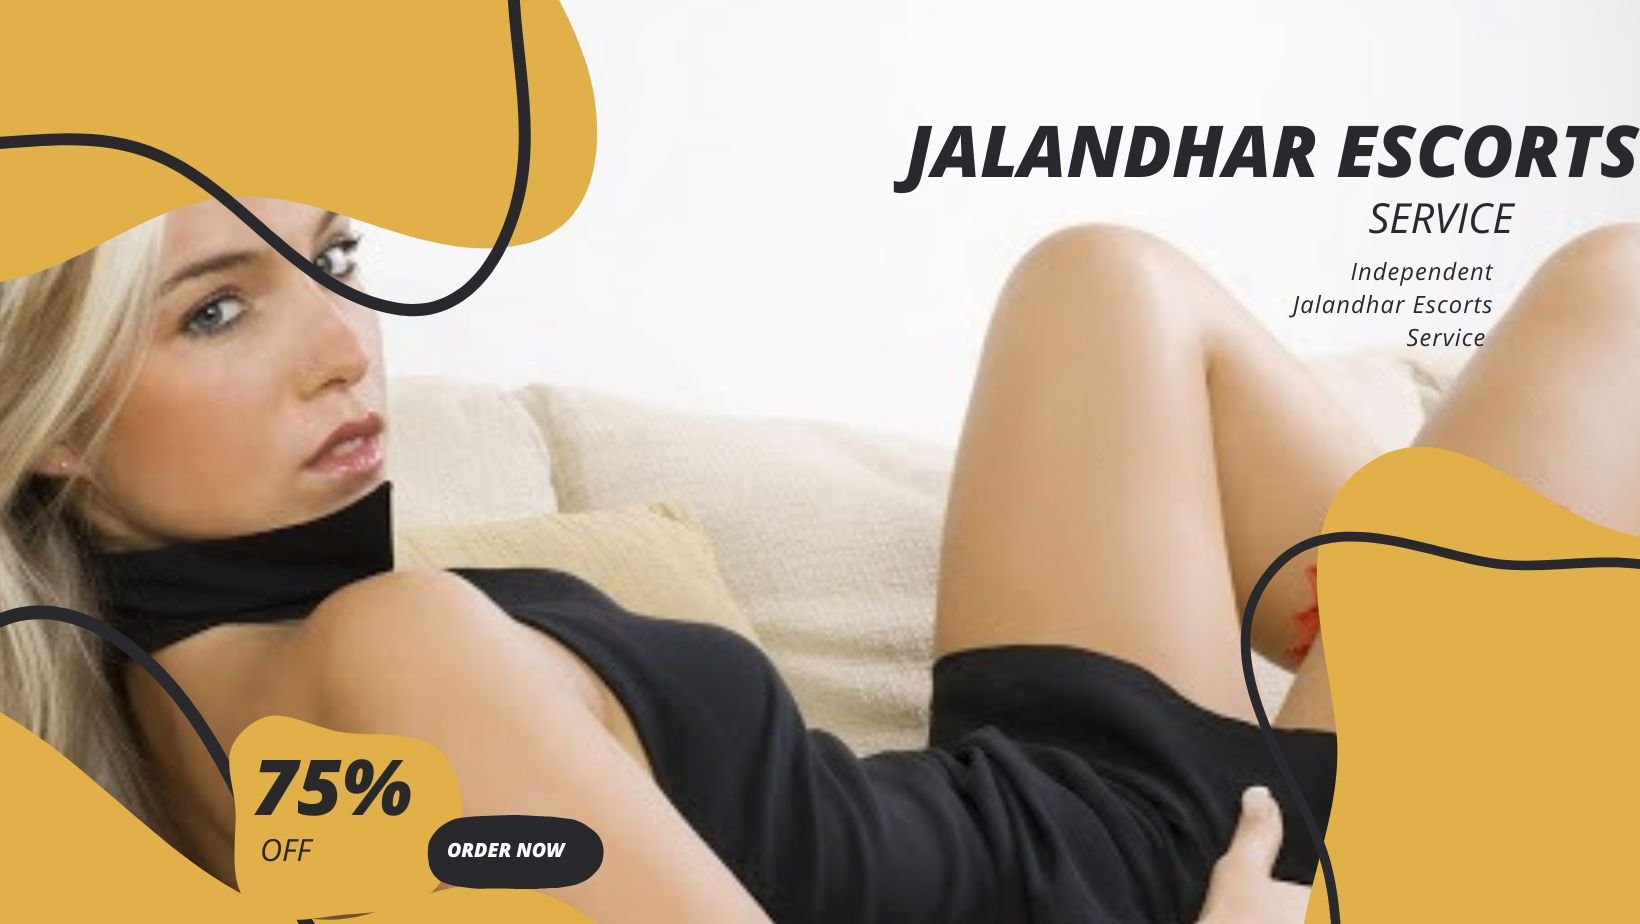 Jalandhar Escorts girls